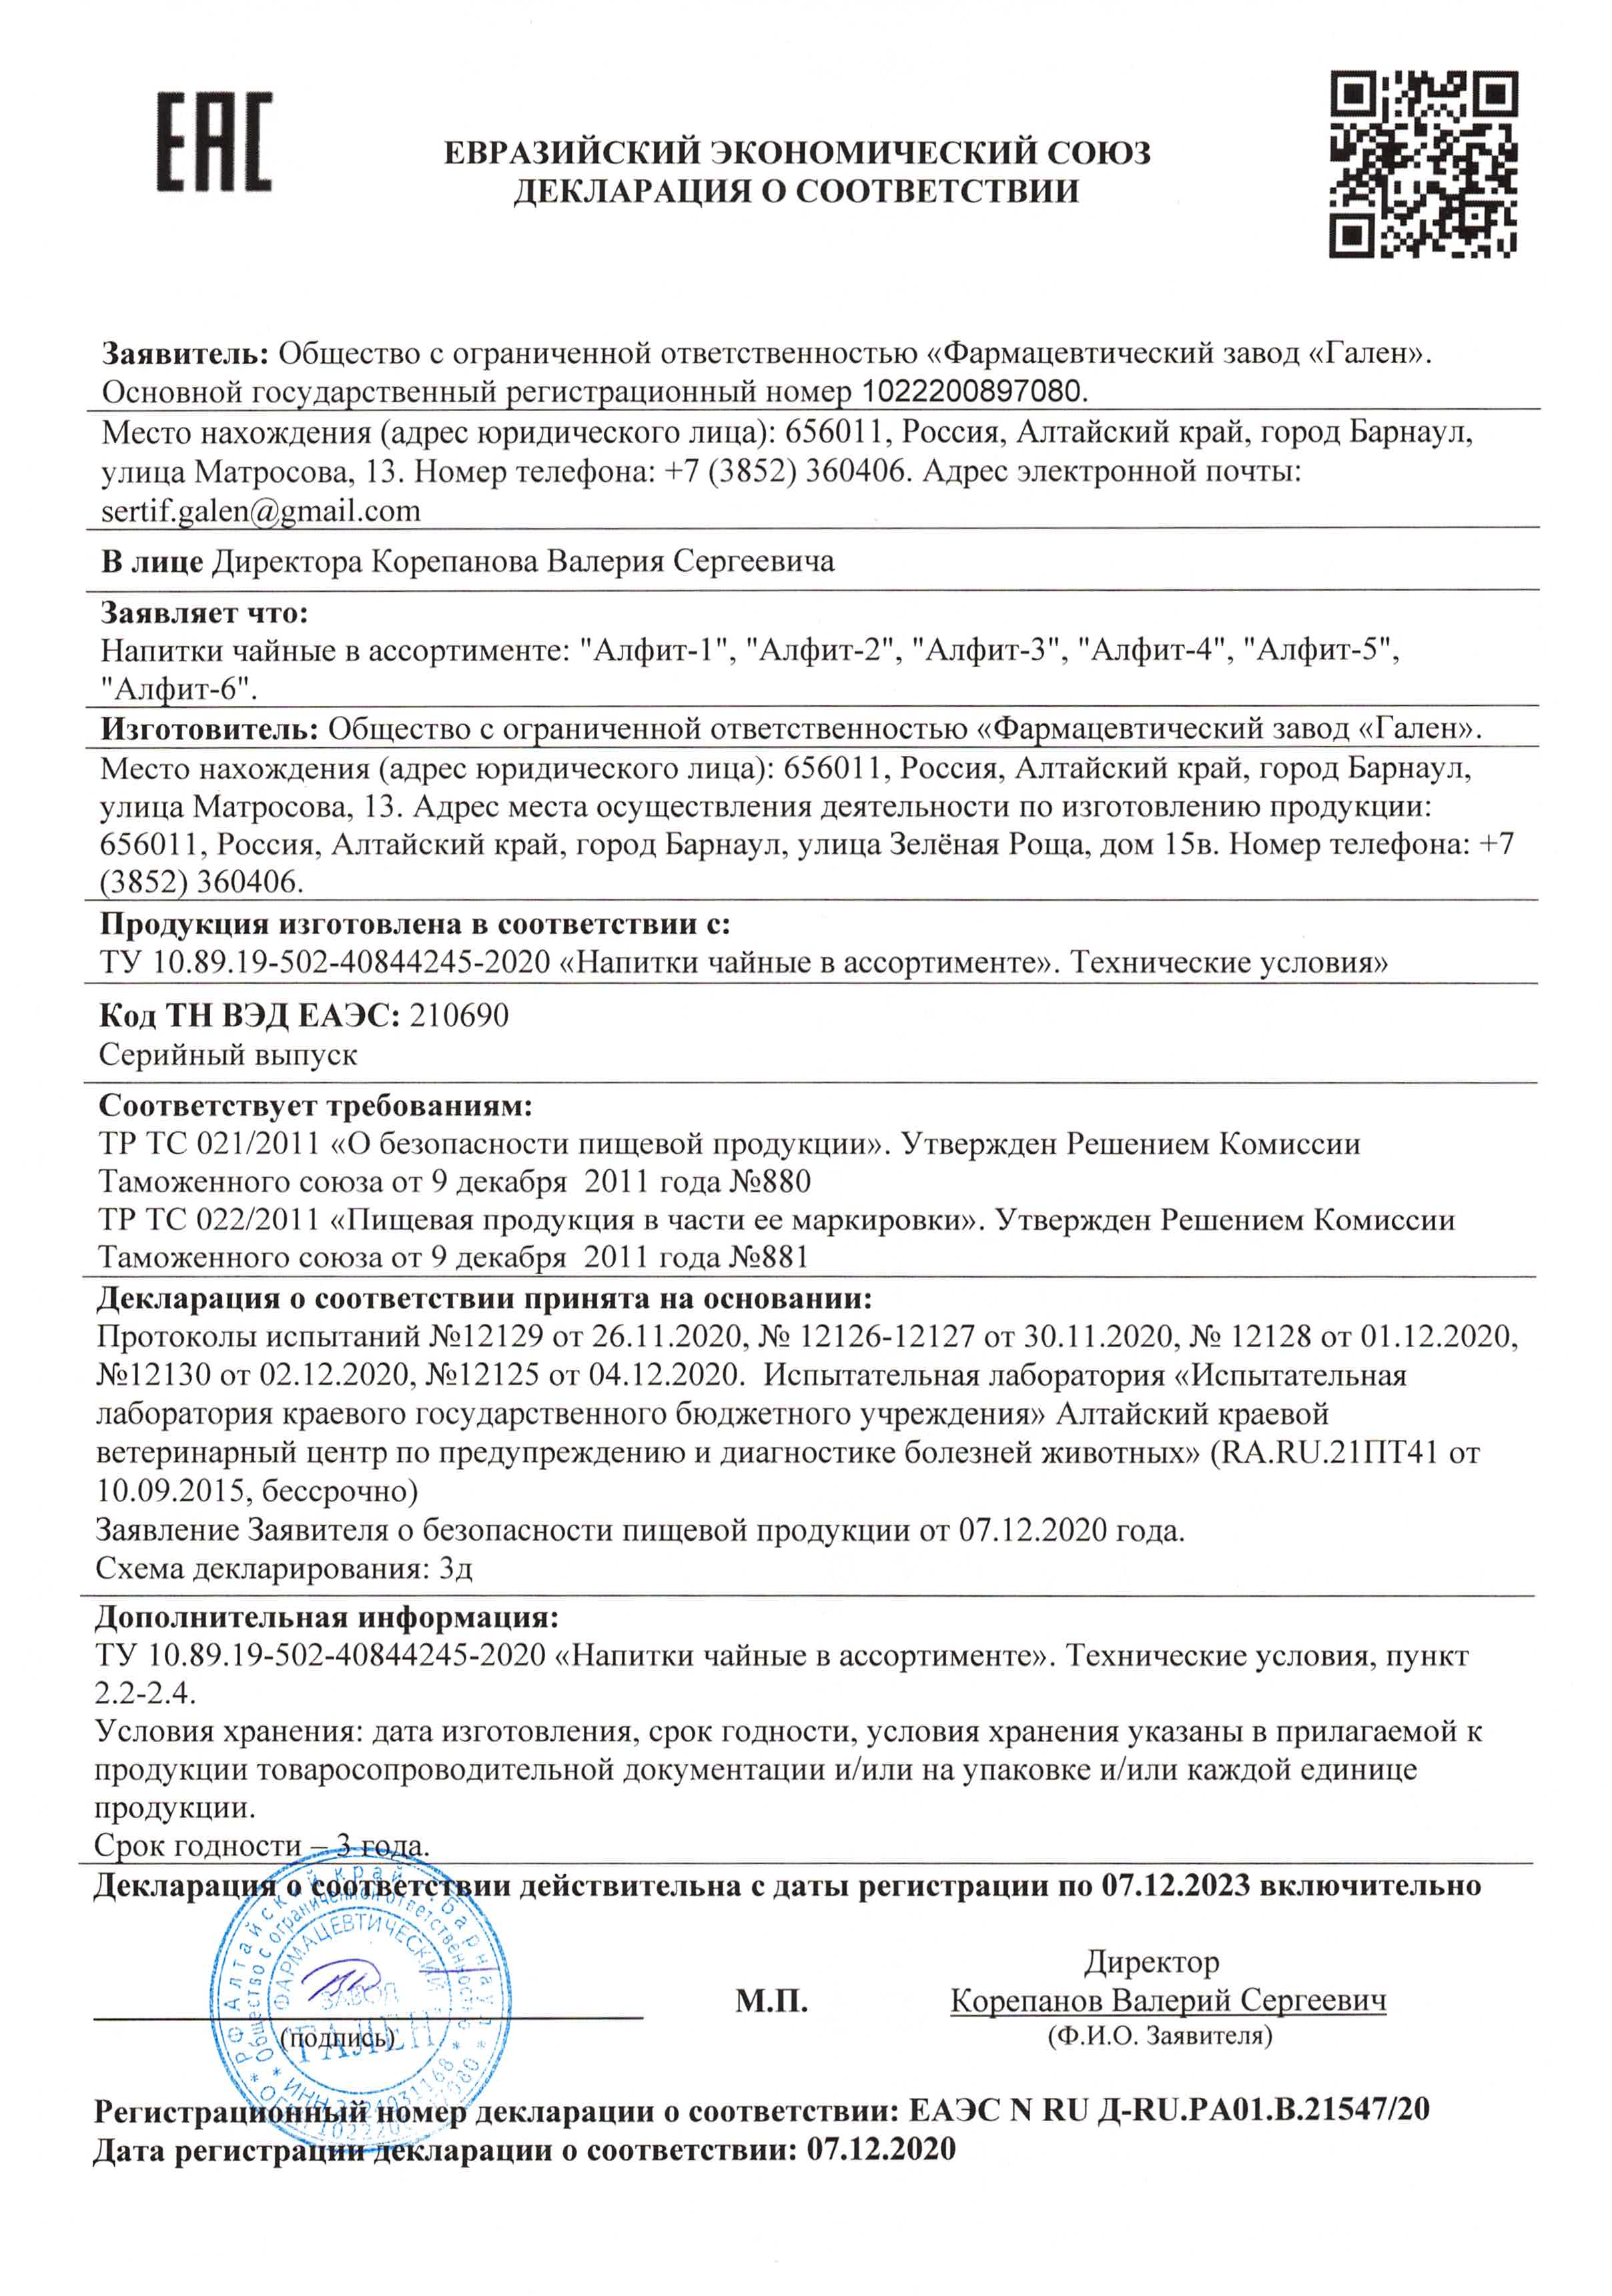 картинка Фитокомплекс - для укрепления организма в период ОРВИ, 180 брикетов по 2 г от магазина Панацея в Красноярске